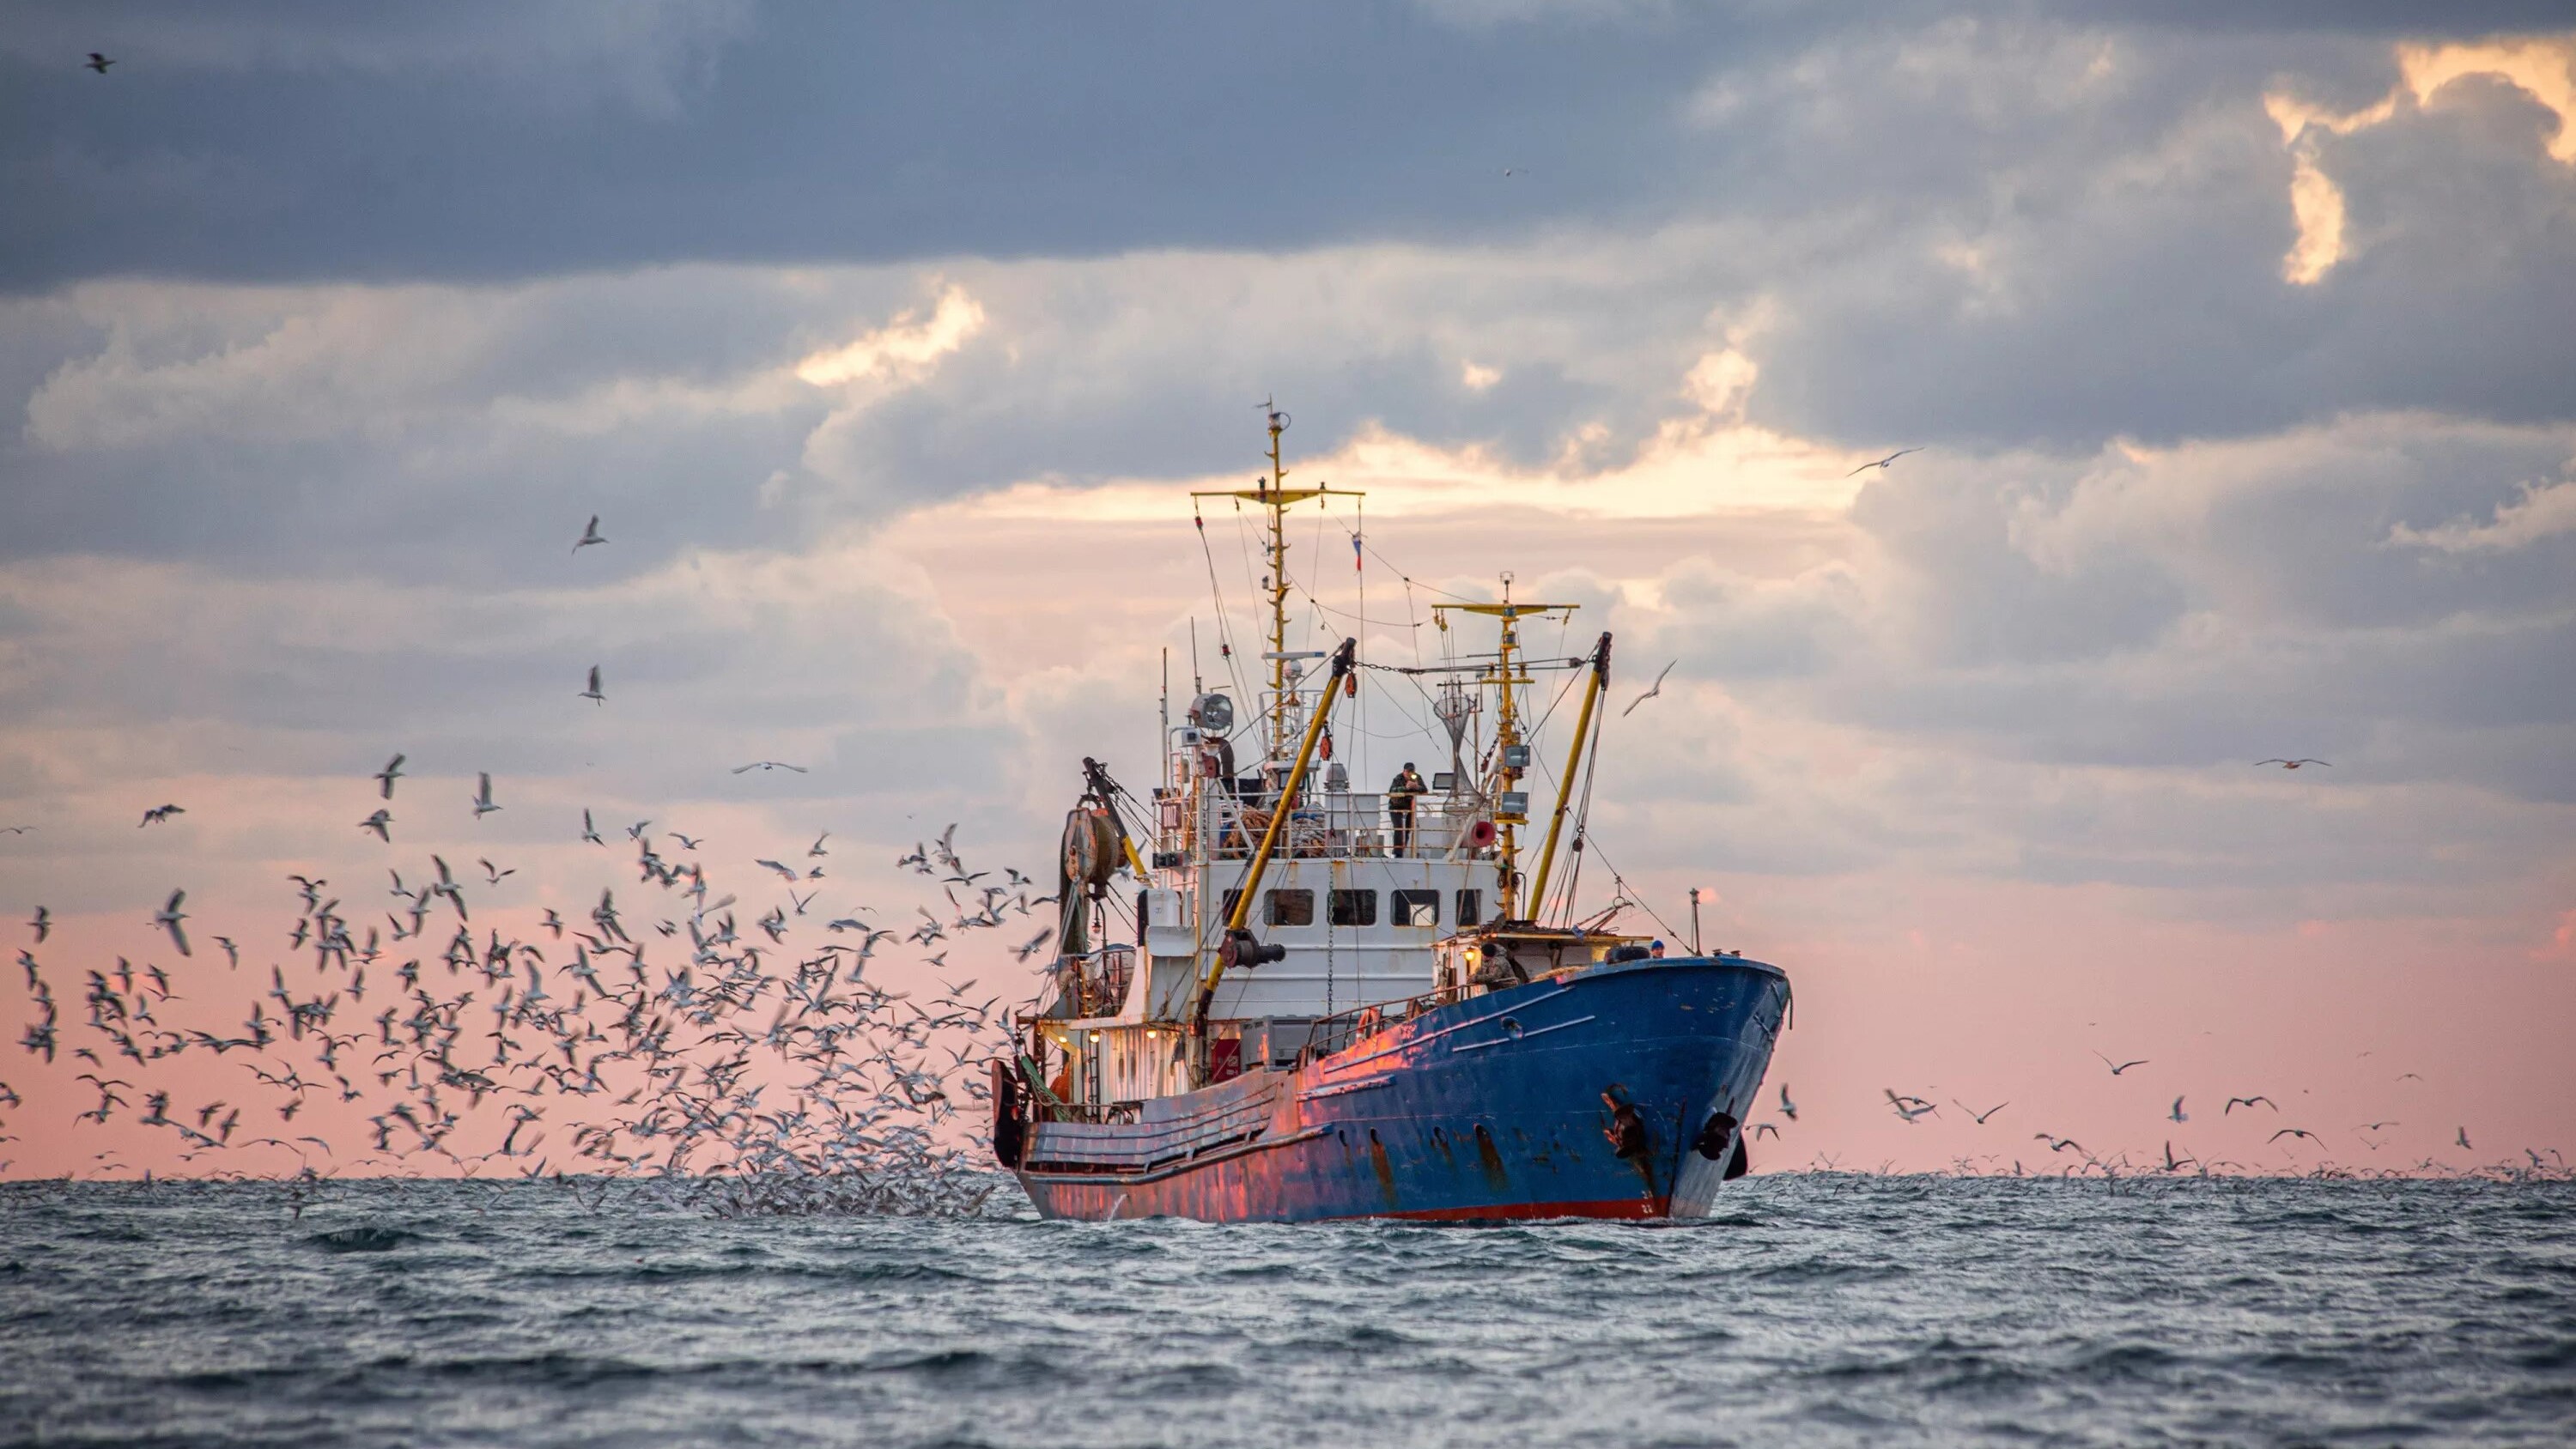 Maroc-Espagne : Vers l’harmonisation des normes de la gestion des ressources halieutiques